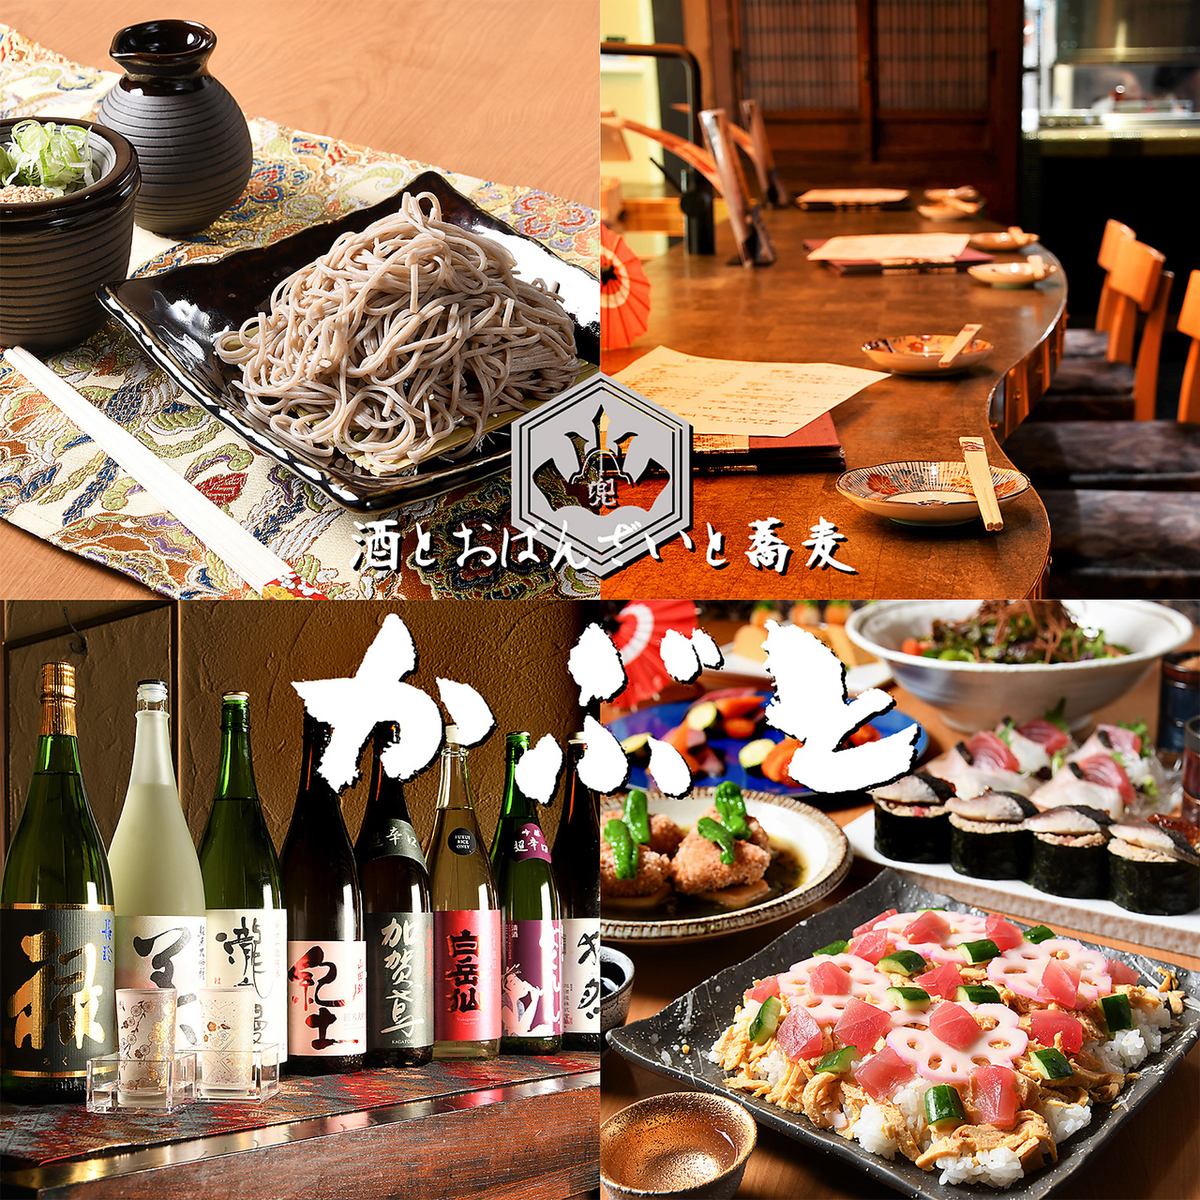 度过悠闲时光的休闲空间...请享用严选的日本酒、小菜、家常菜、荞麦面。